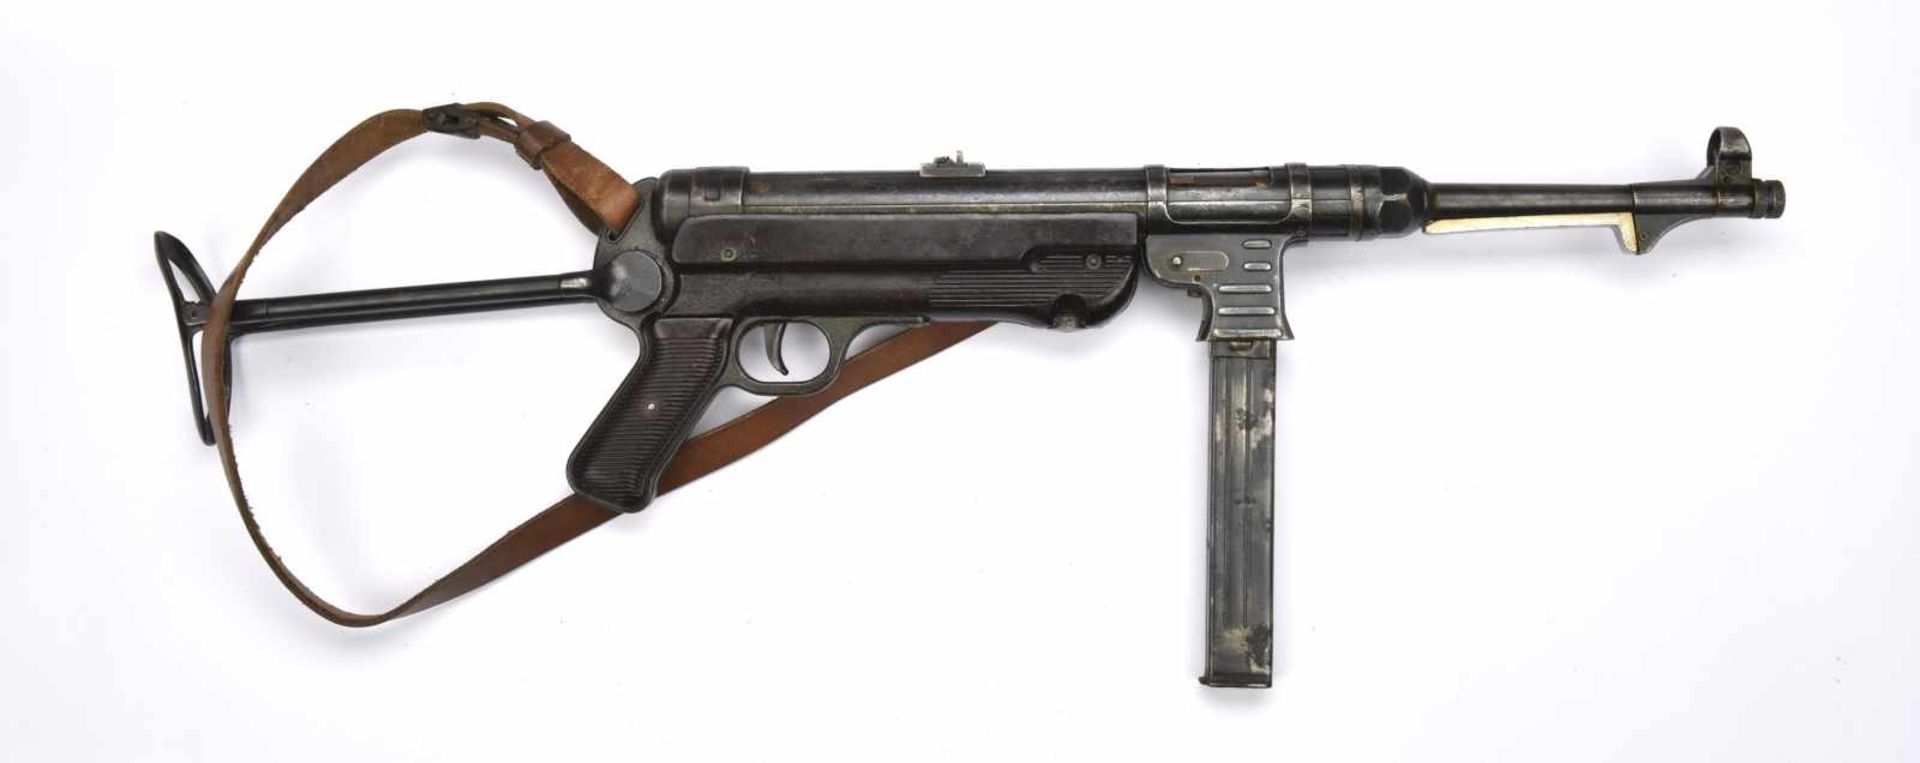 Pistolet mitrailleur MP40 Bâti et poignée en bakélite rouge, crosse pliante fonctionnelle.